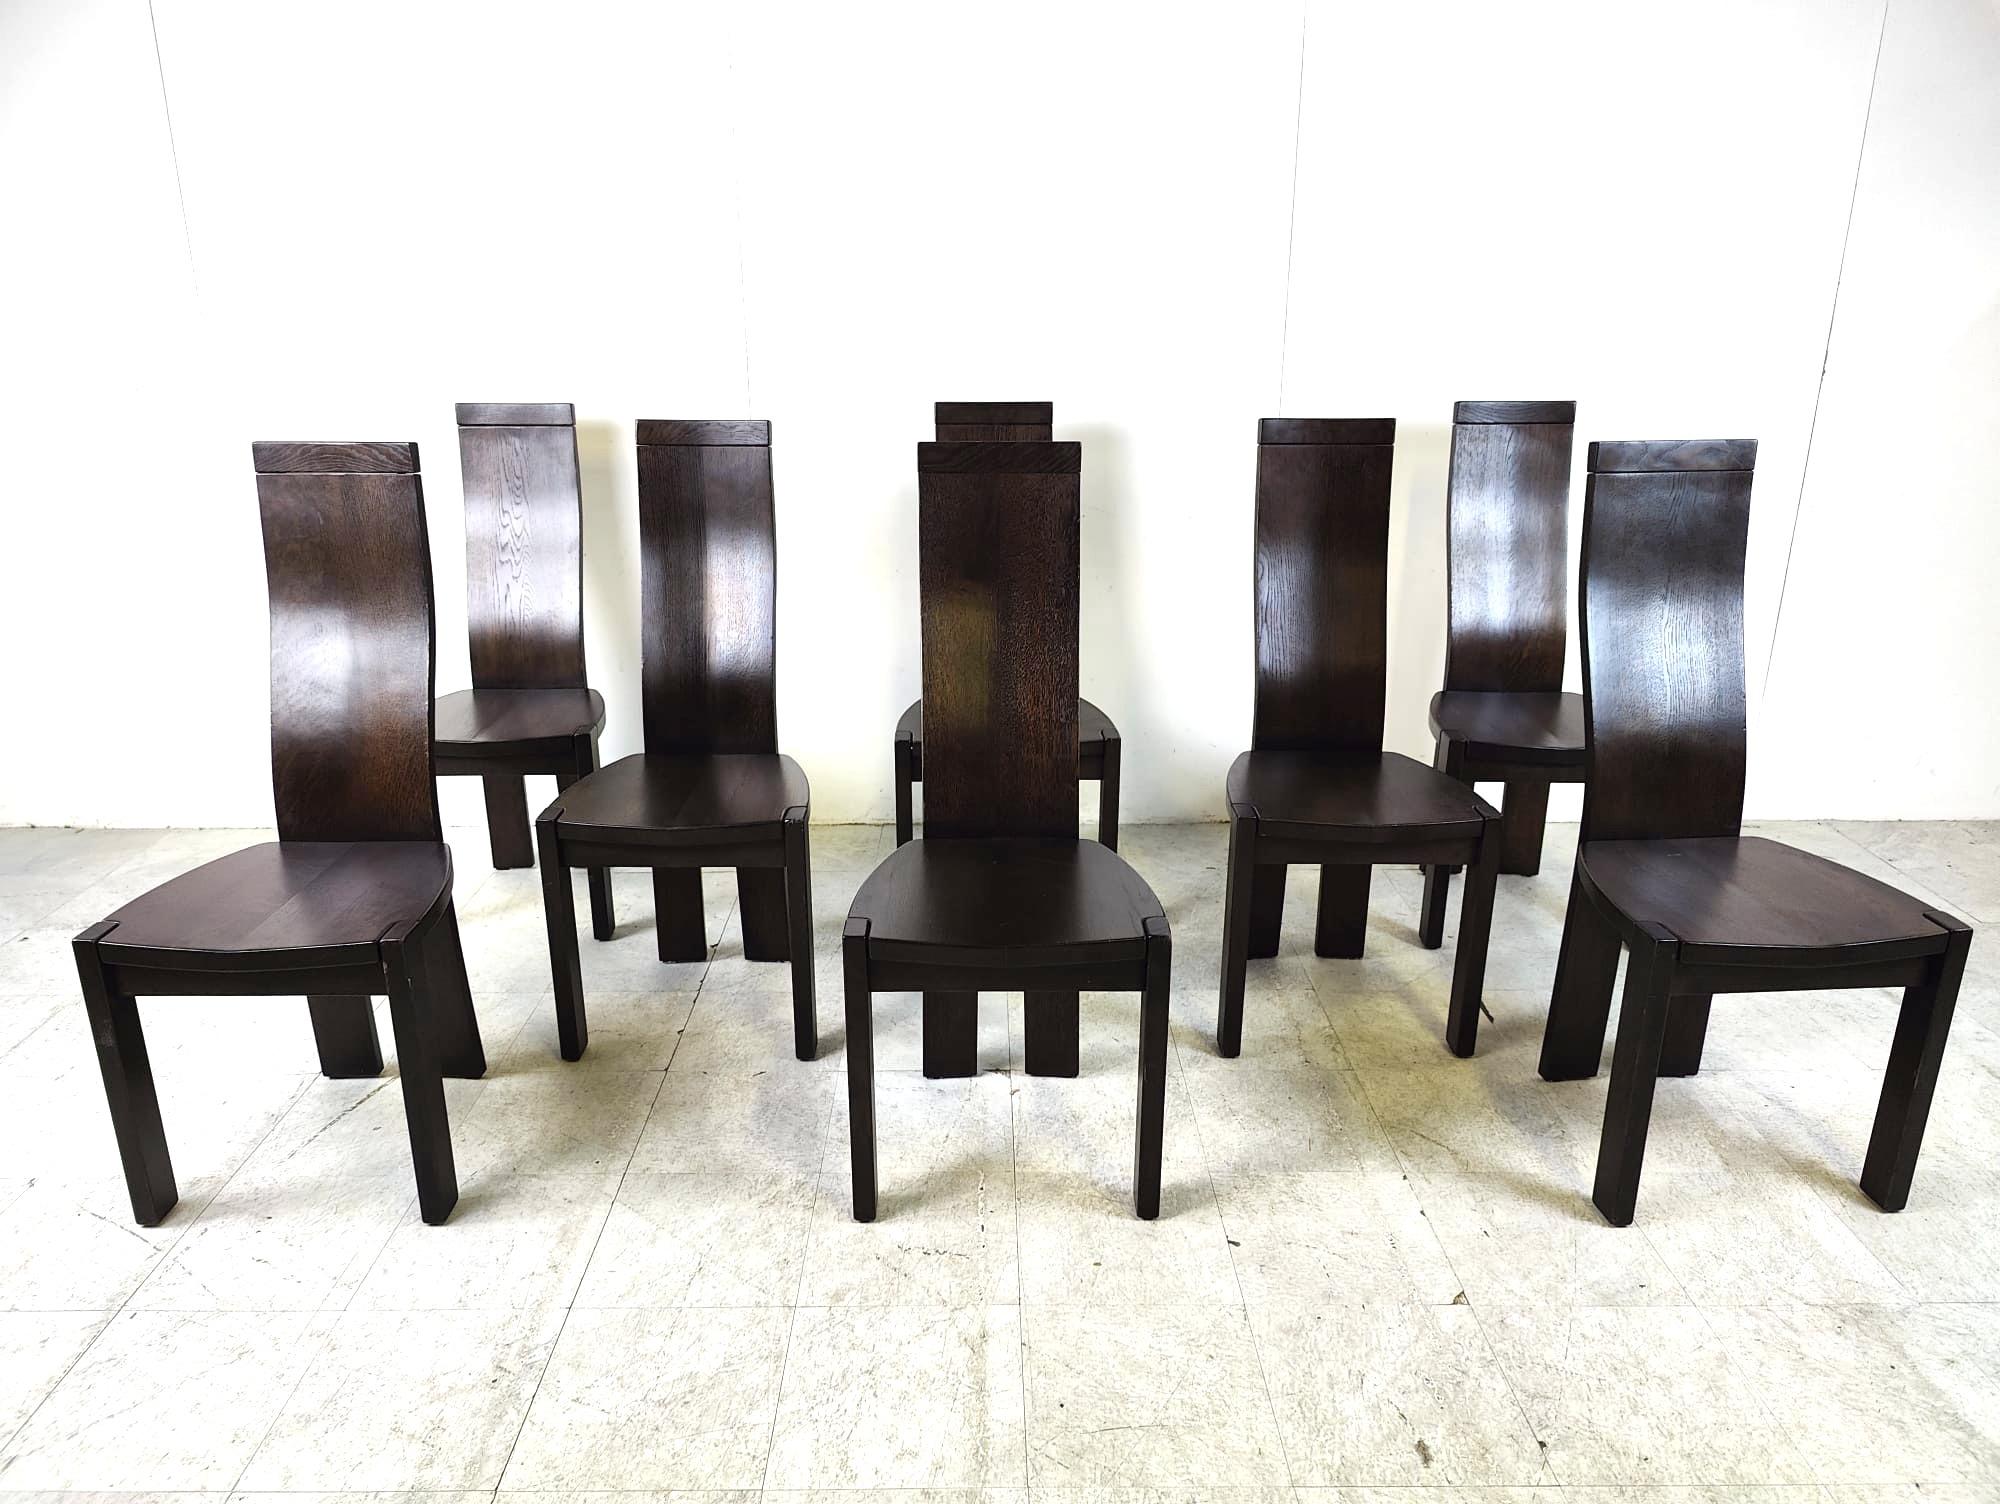 Elegante, skulpturale Esszimmerstühle mit hoher Rückenlehne von Vanden Berghe Pauvers.

Die Stühle sind insgesamt in gutem Zustand

1980er Jahre - Belgien

Abmessungen:
Höhe: 108cm/42.51